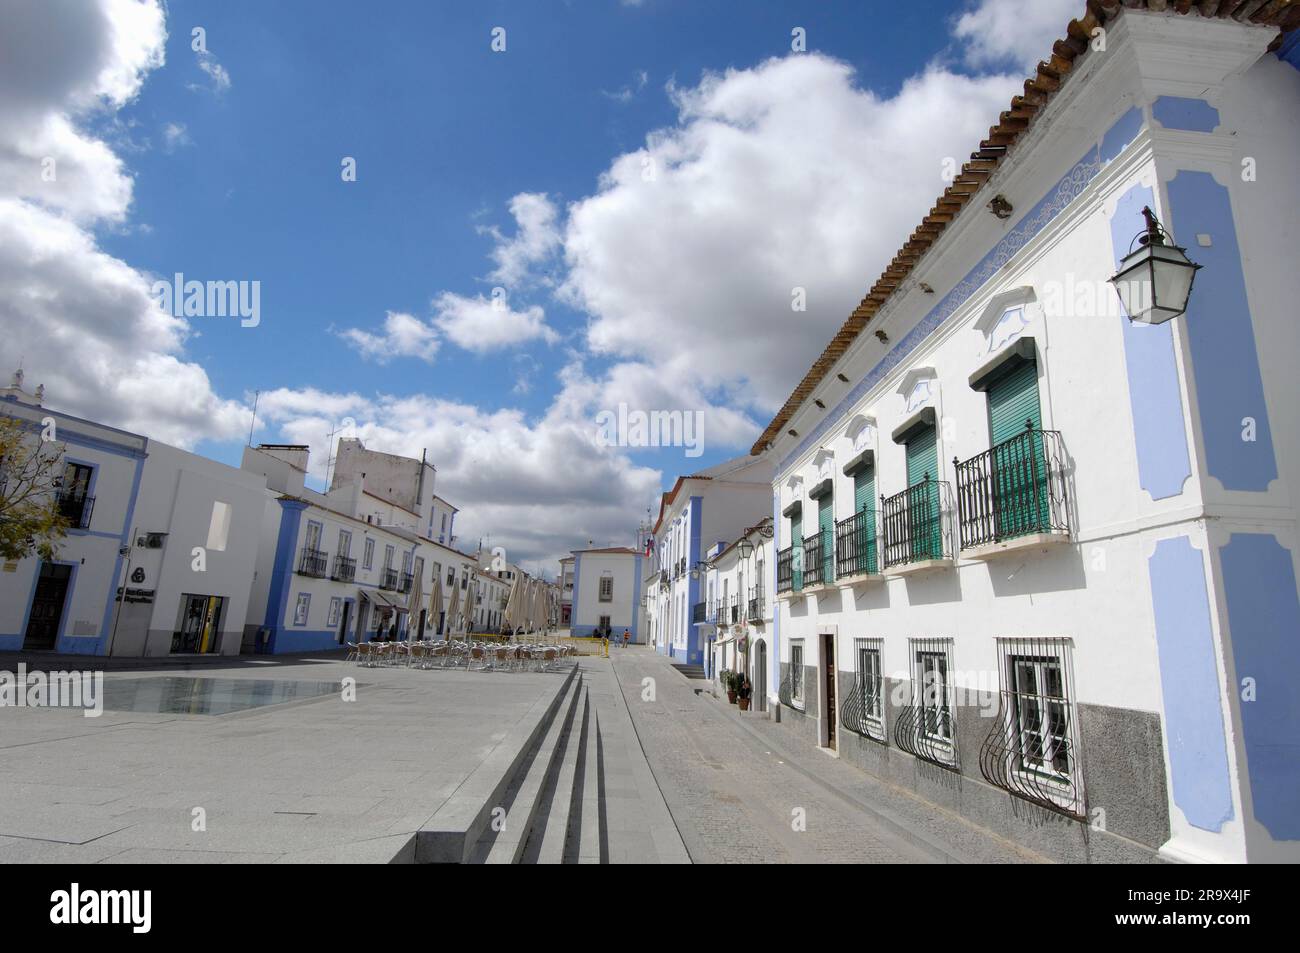 Piazza con caffè di strada, Arraiolos, Alentejo, Portogallo Foto Stock